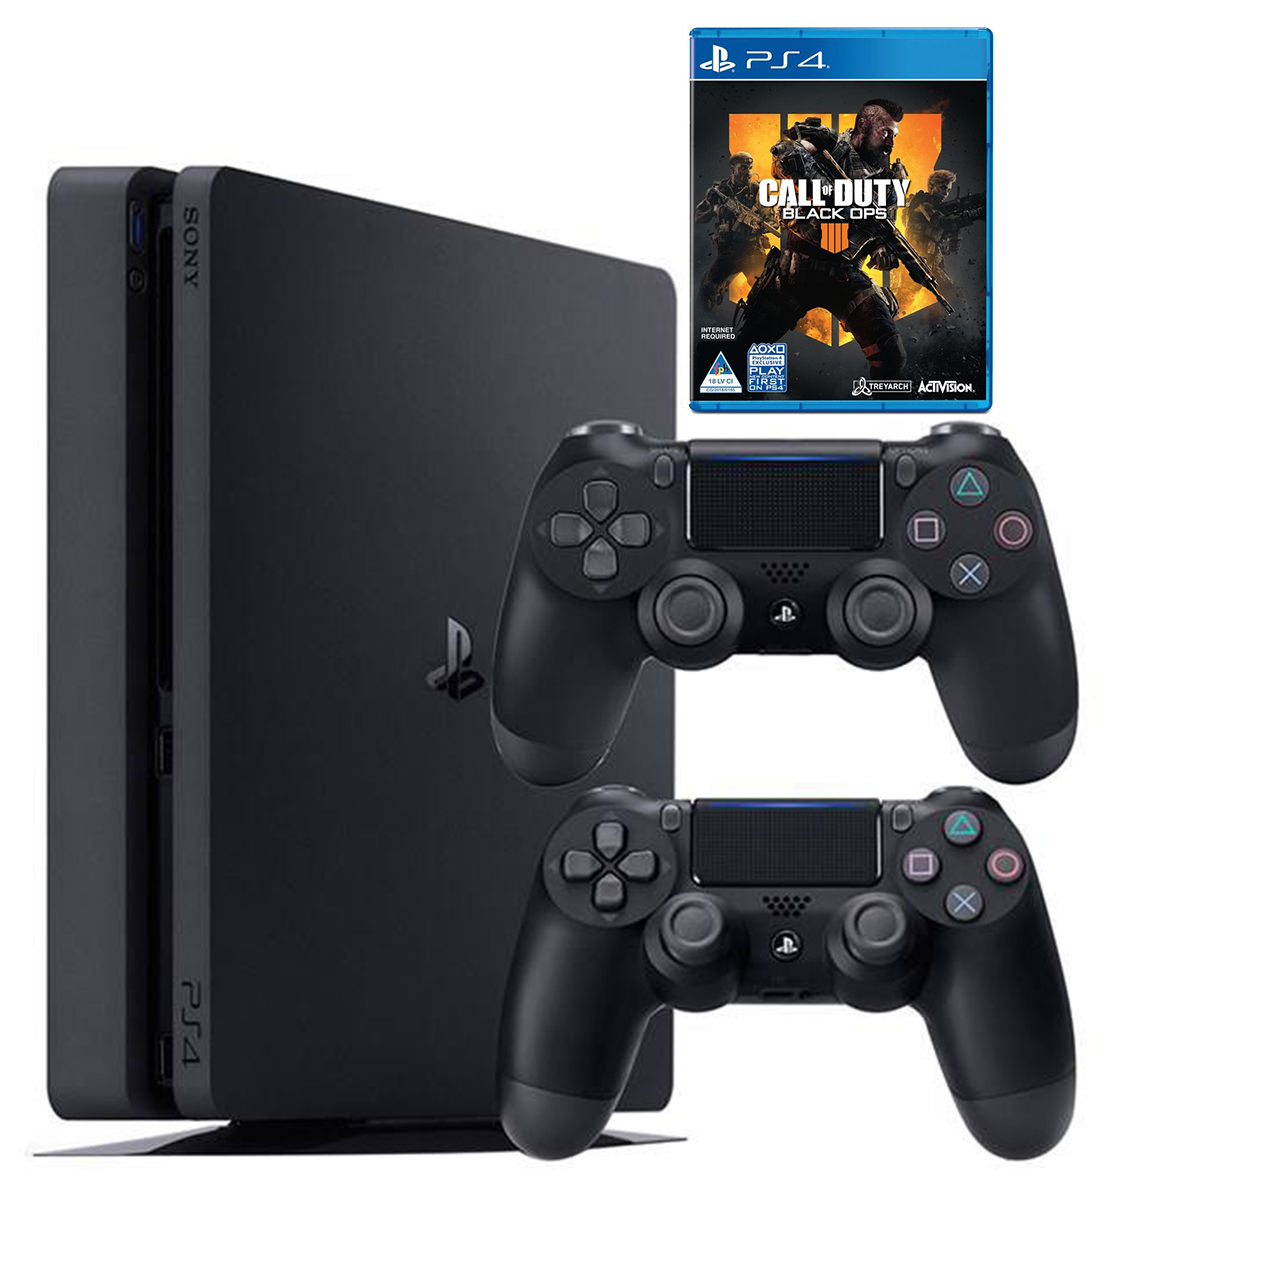 کنسول بازی سونی مدل Playstation 4 Slim کد Region 2 CUH-2216A  ظرفیت 500 گیگابایت